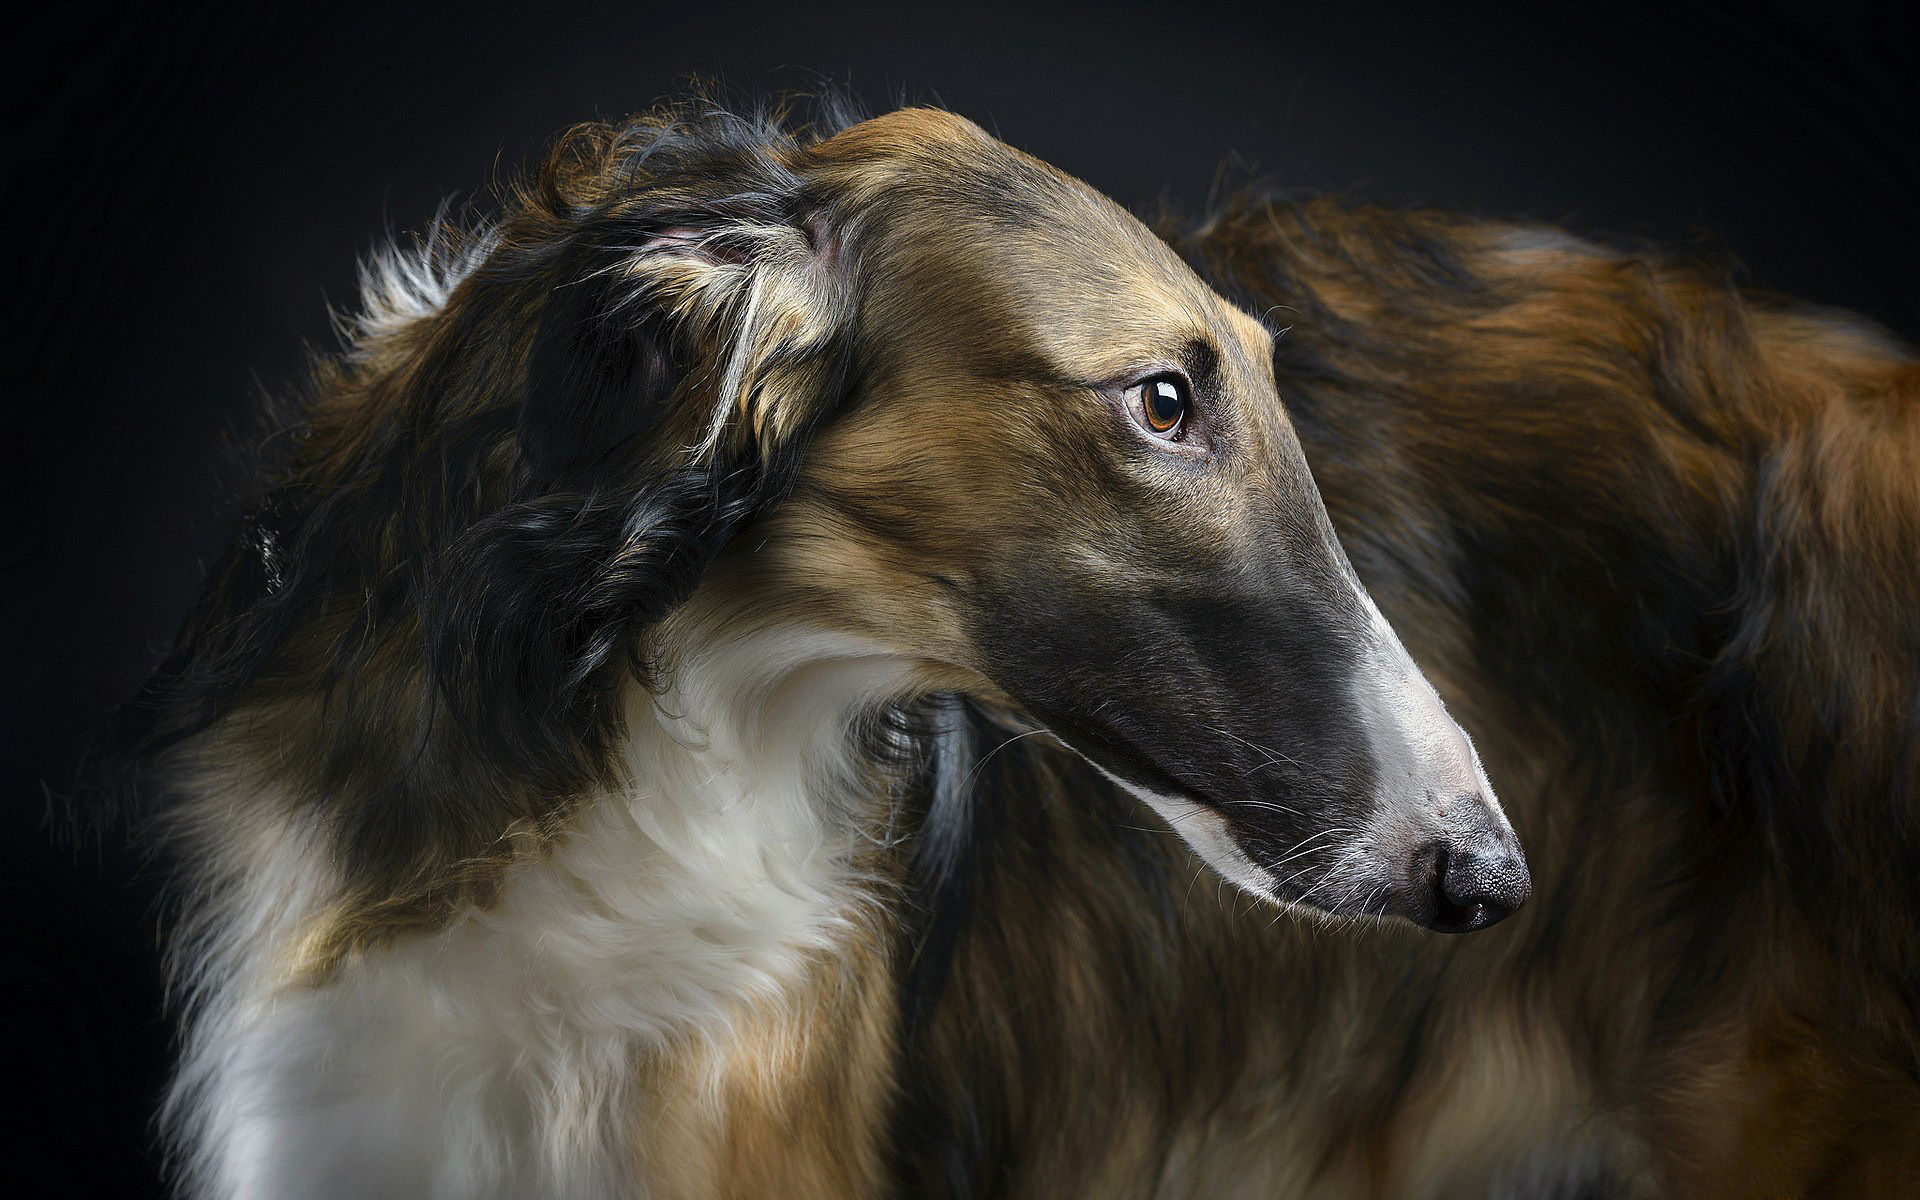 Russischer Windhund schön, elegant, kräftiger Hund, um mehr